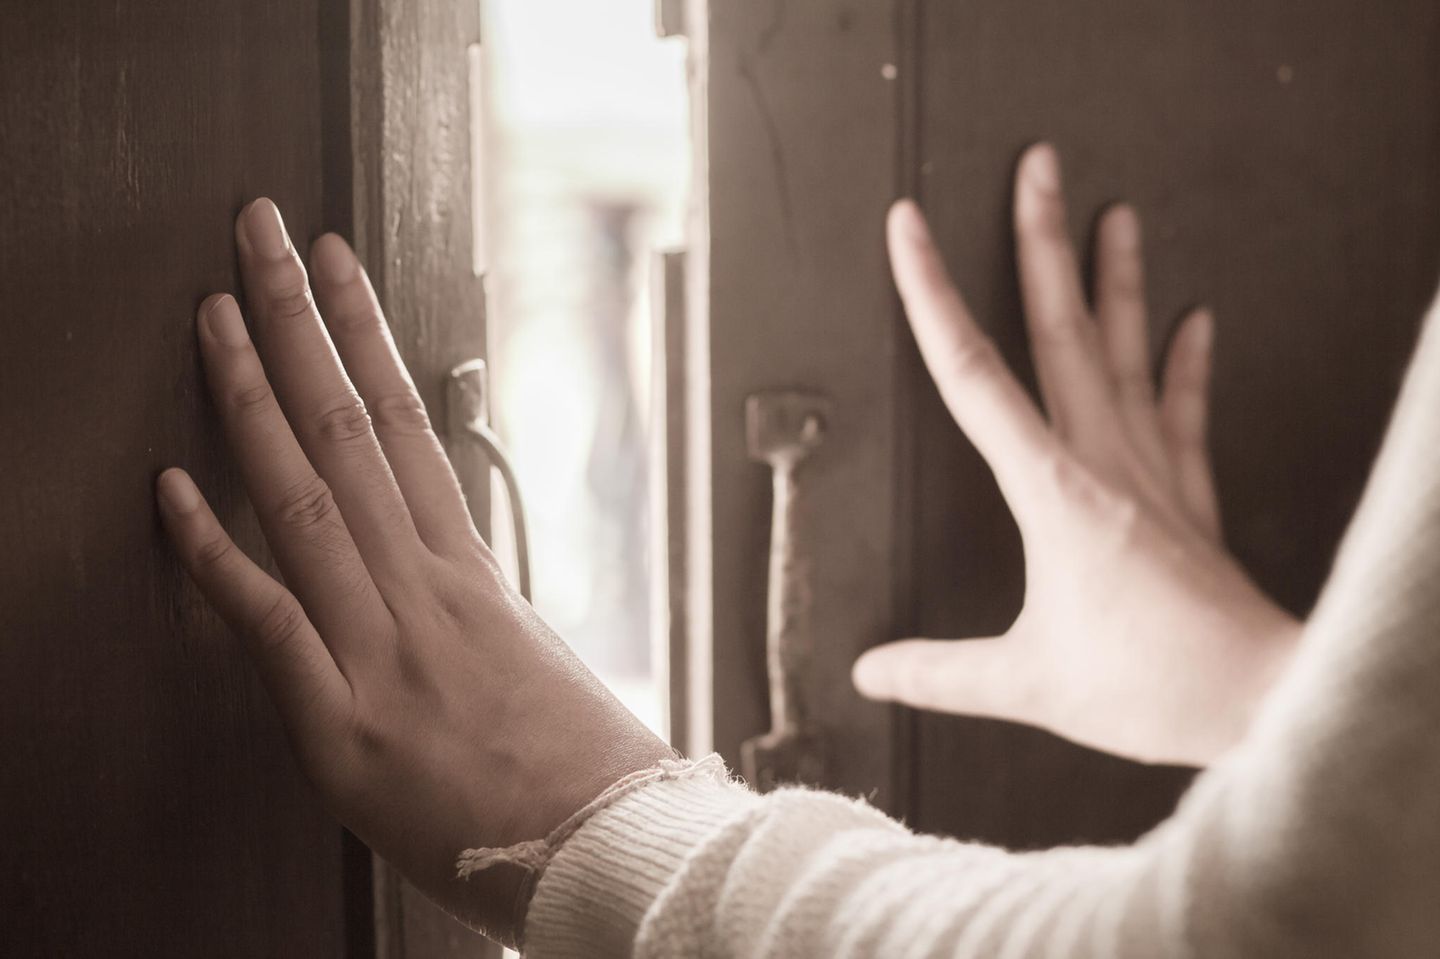 Schicksalsschlag: Hände ausgestreckt an Tür